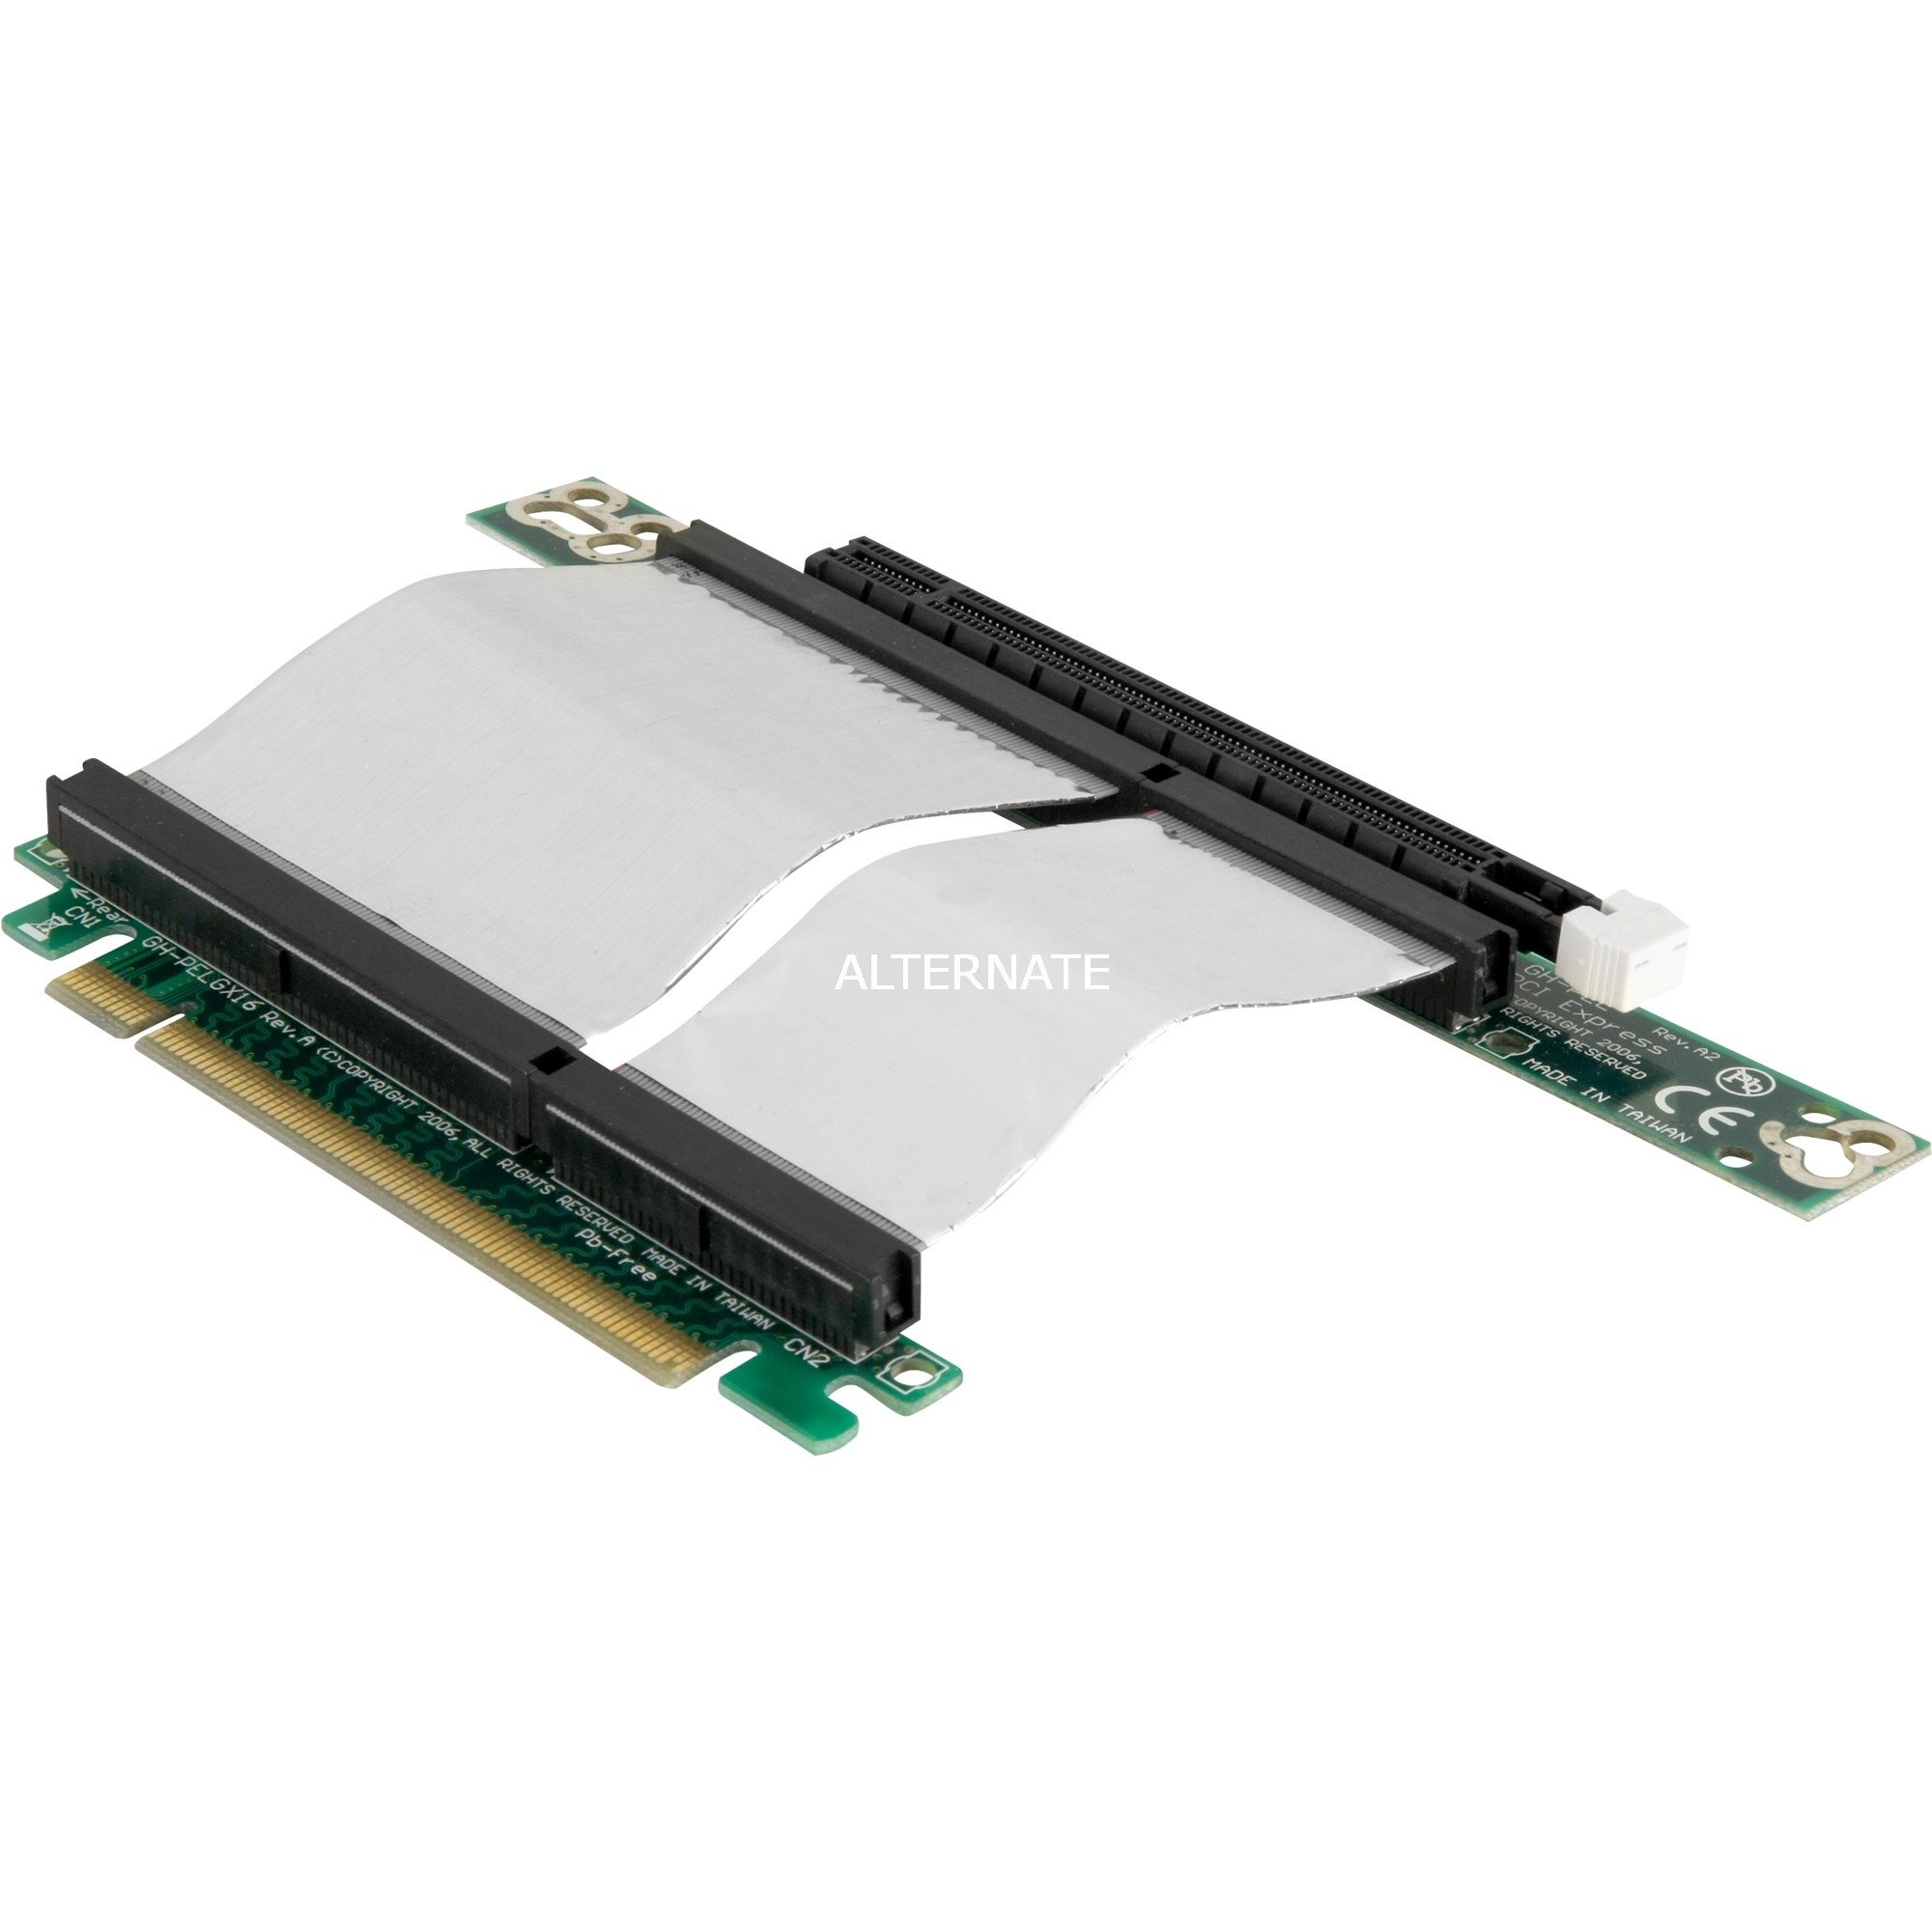 Image of Alternate - Riser Card PCIe X16 flexibel online einkaufen bei Alternate